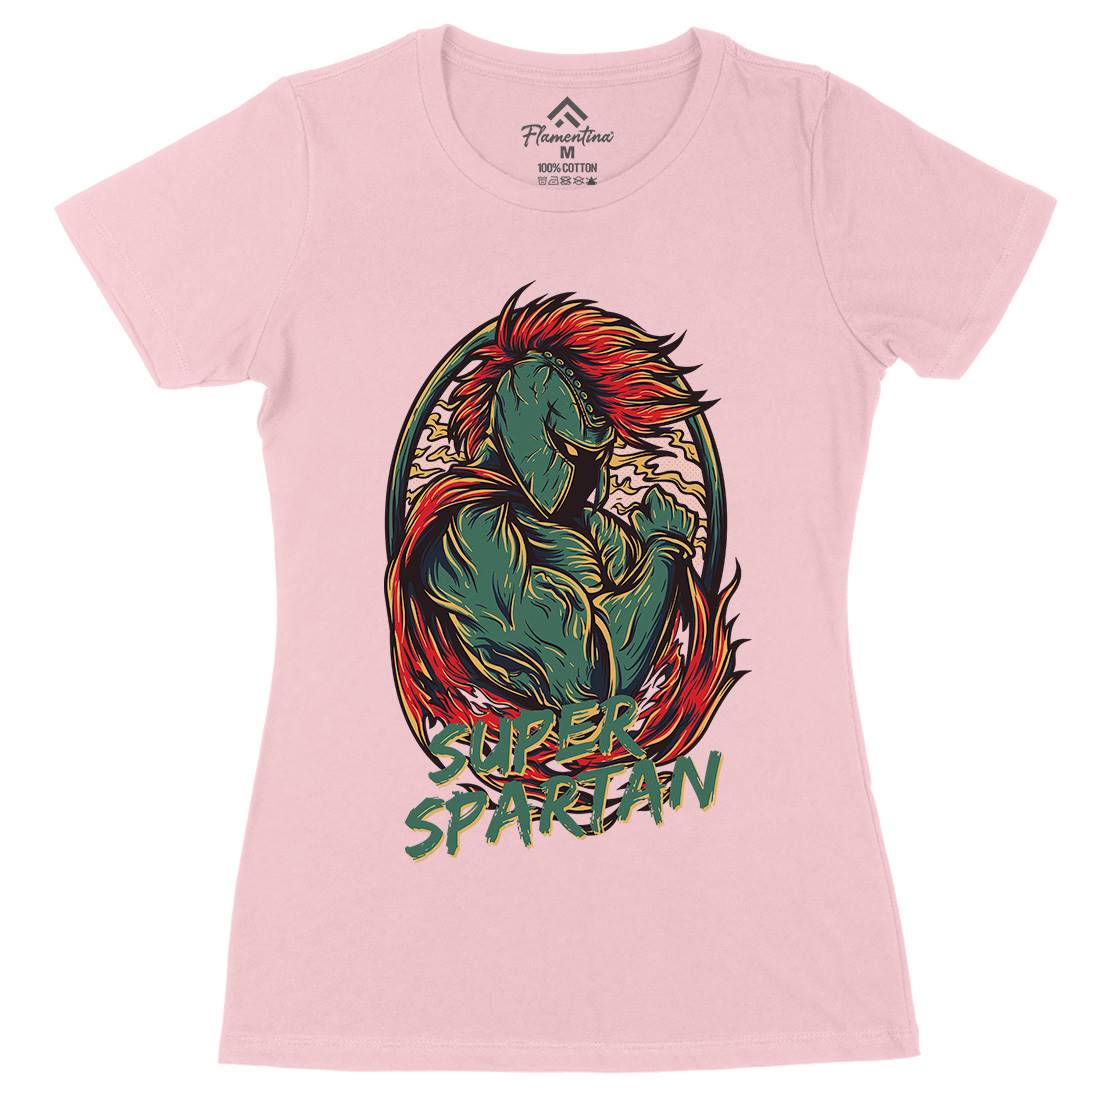 Super Spartan Womens Organic Crew Neck T-Shirt Warriors D843